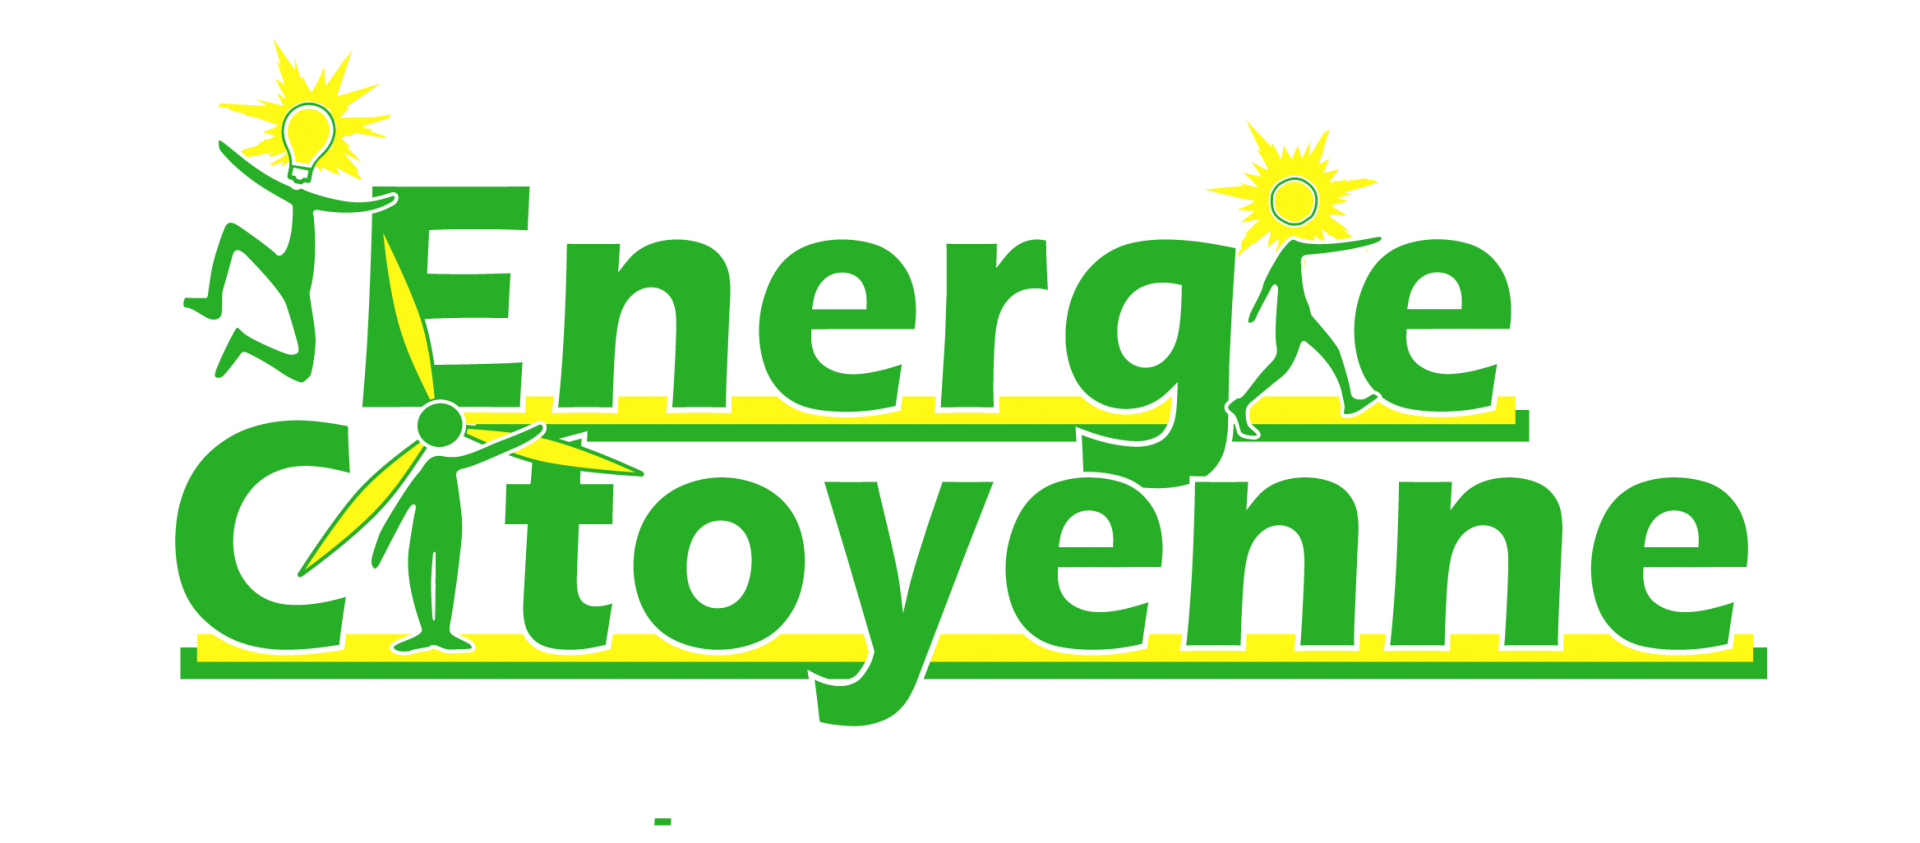 Logo energie citoyenne